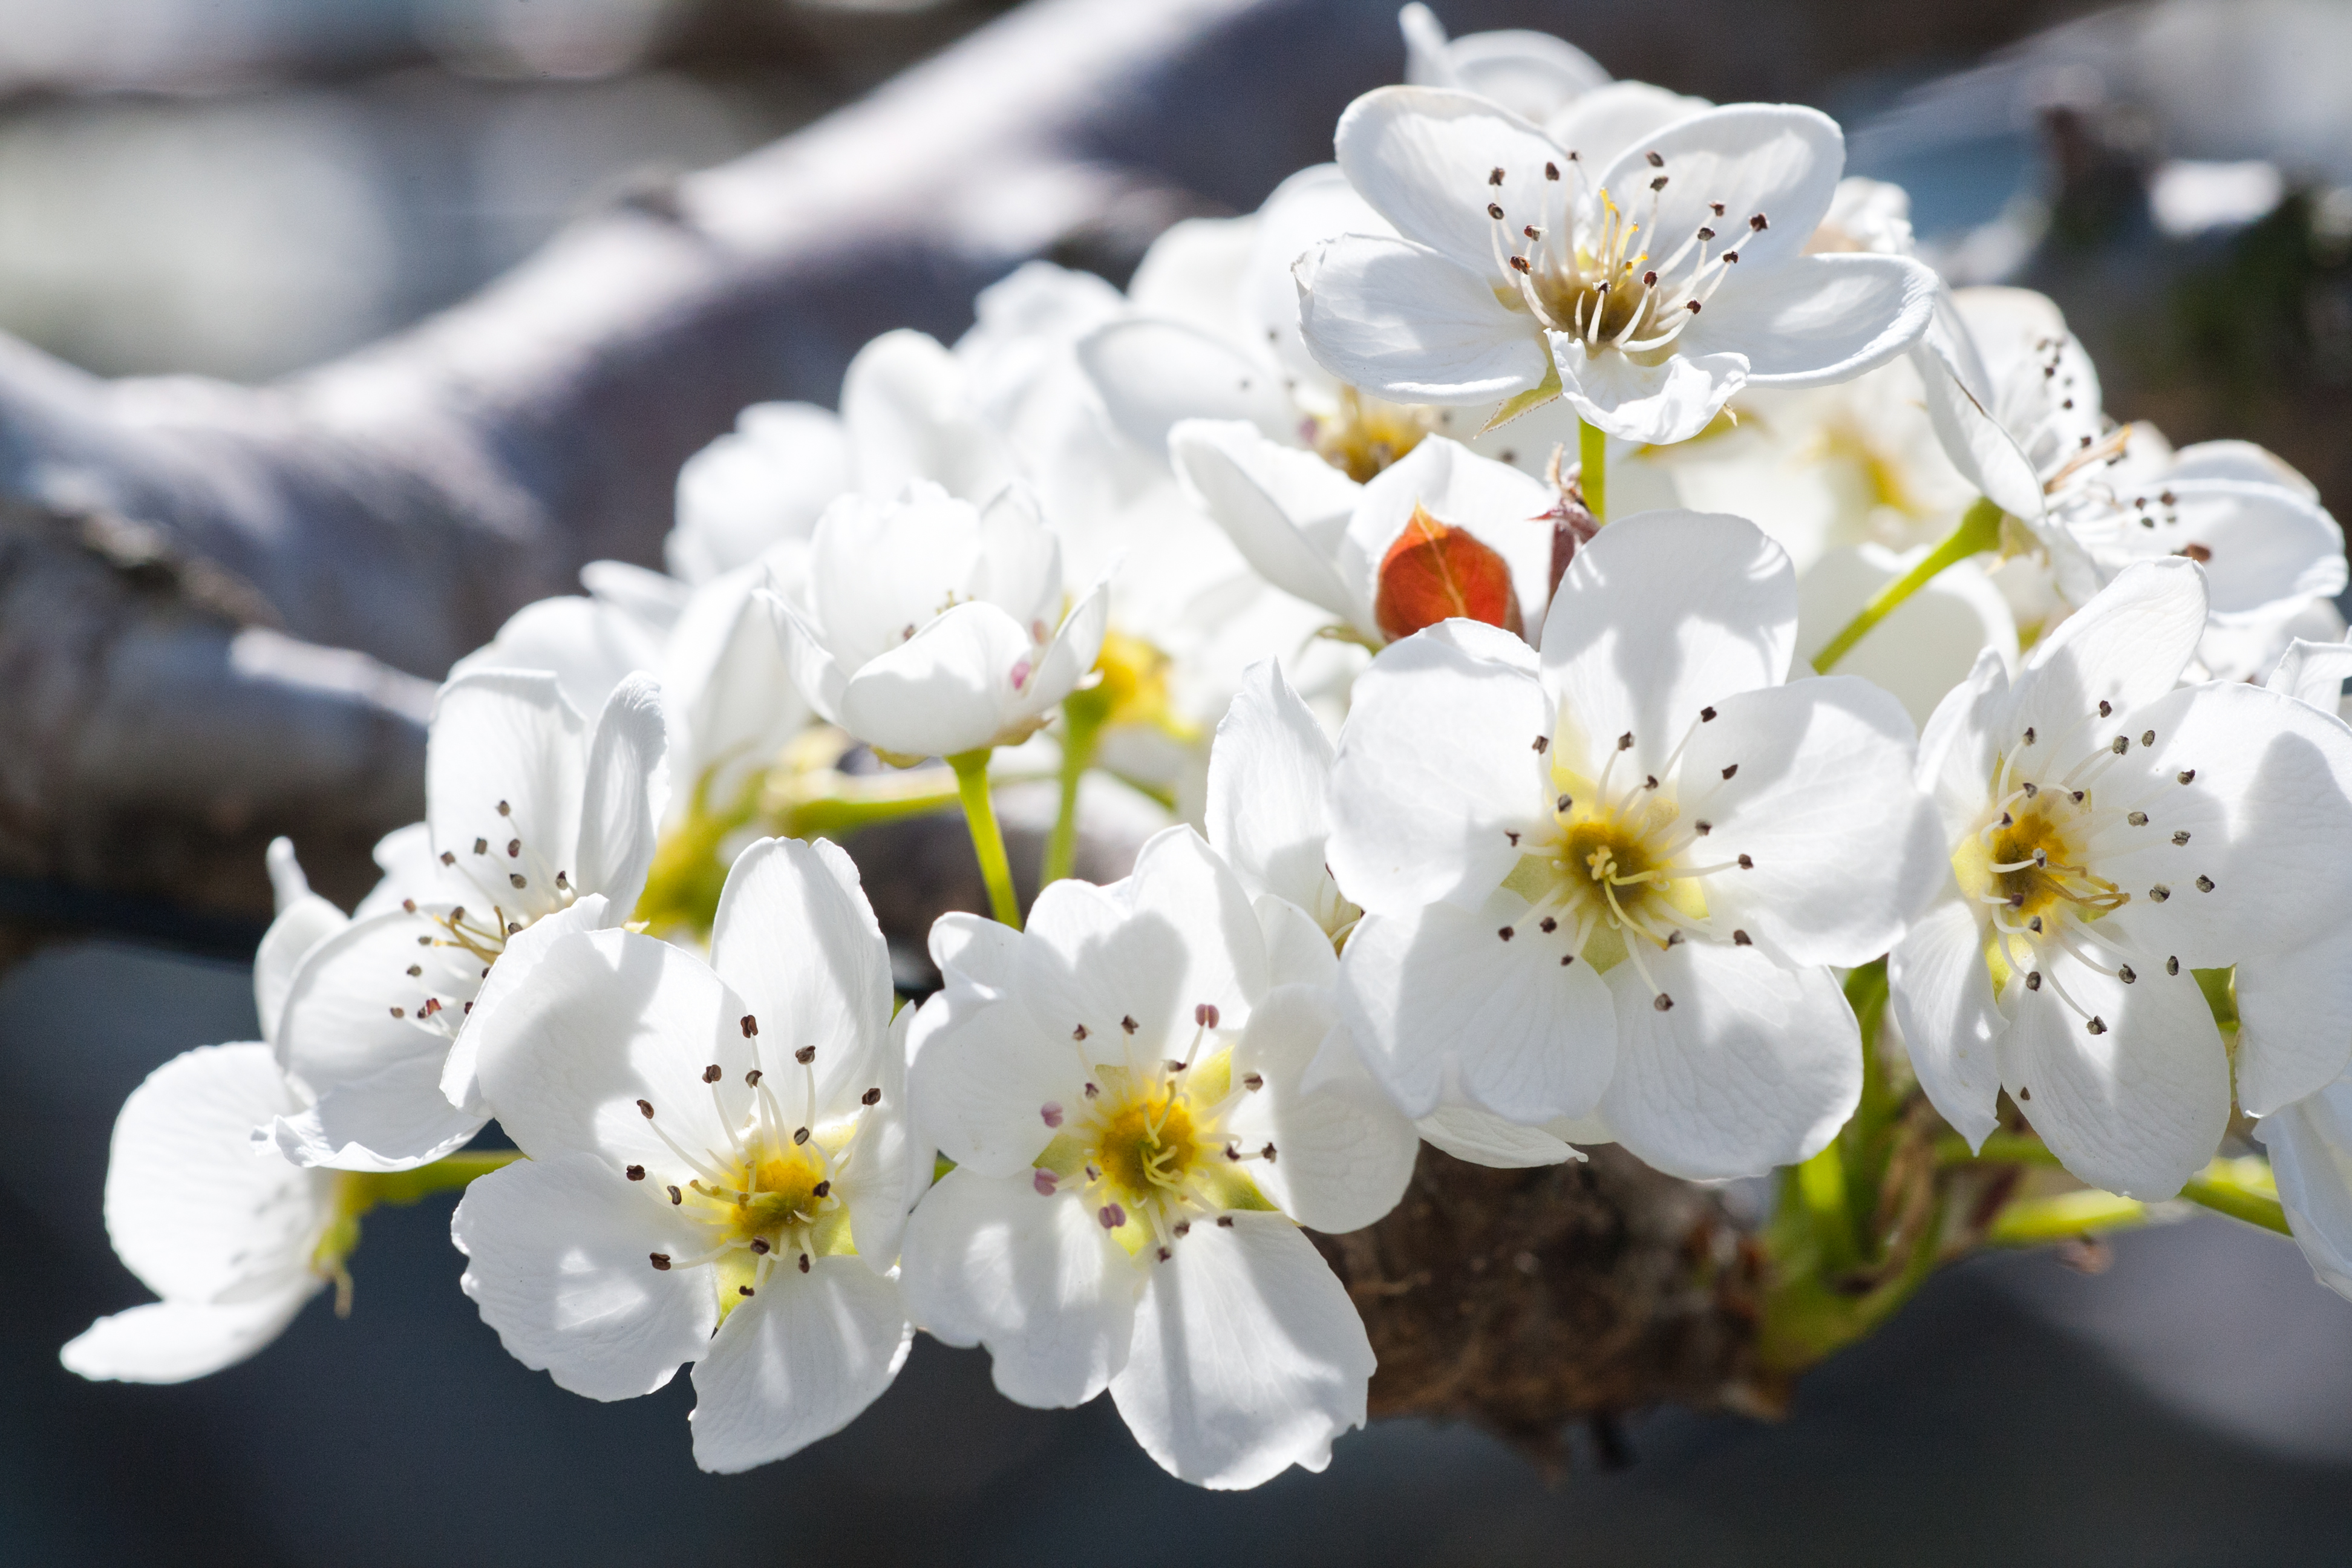 大島 上片桐の梨の花 花と植物 自然 トリップアイデア Go Nagano 長野県公式観光サイト